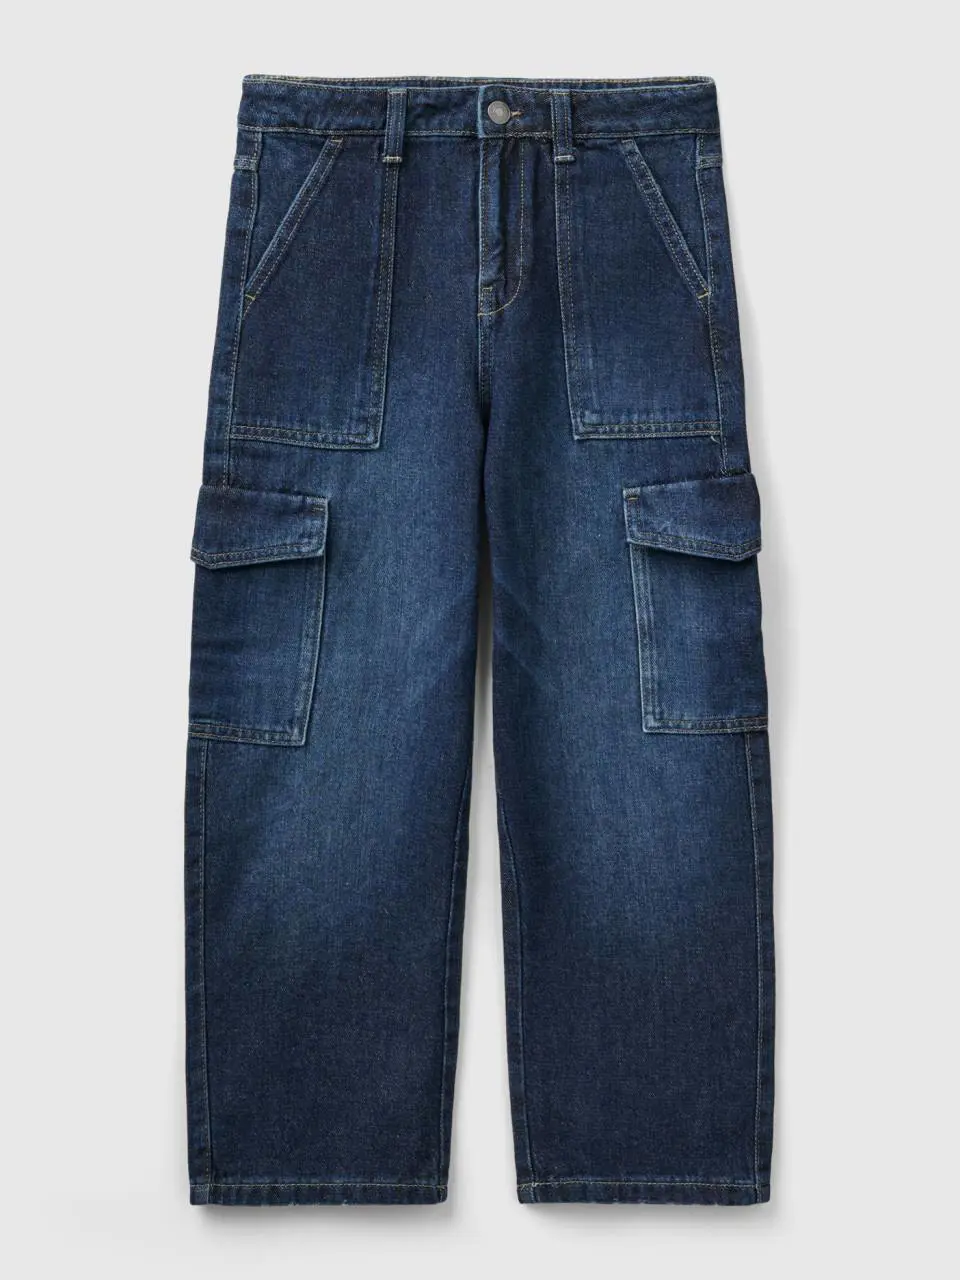 Benetton "eco-recycle" denim cargo jeans. 1